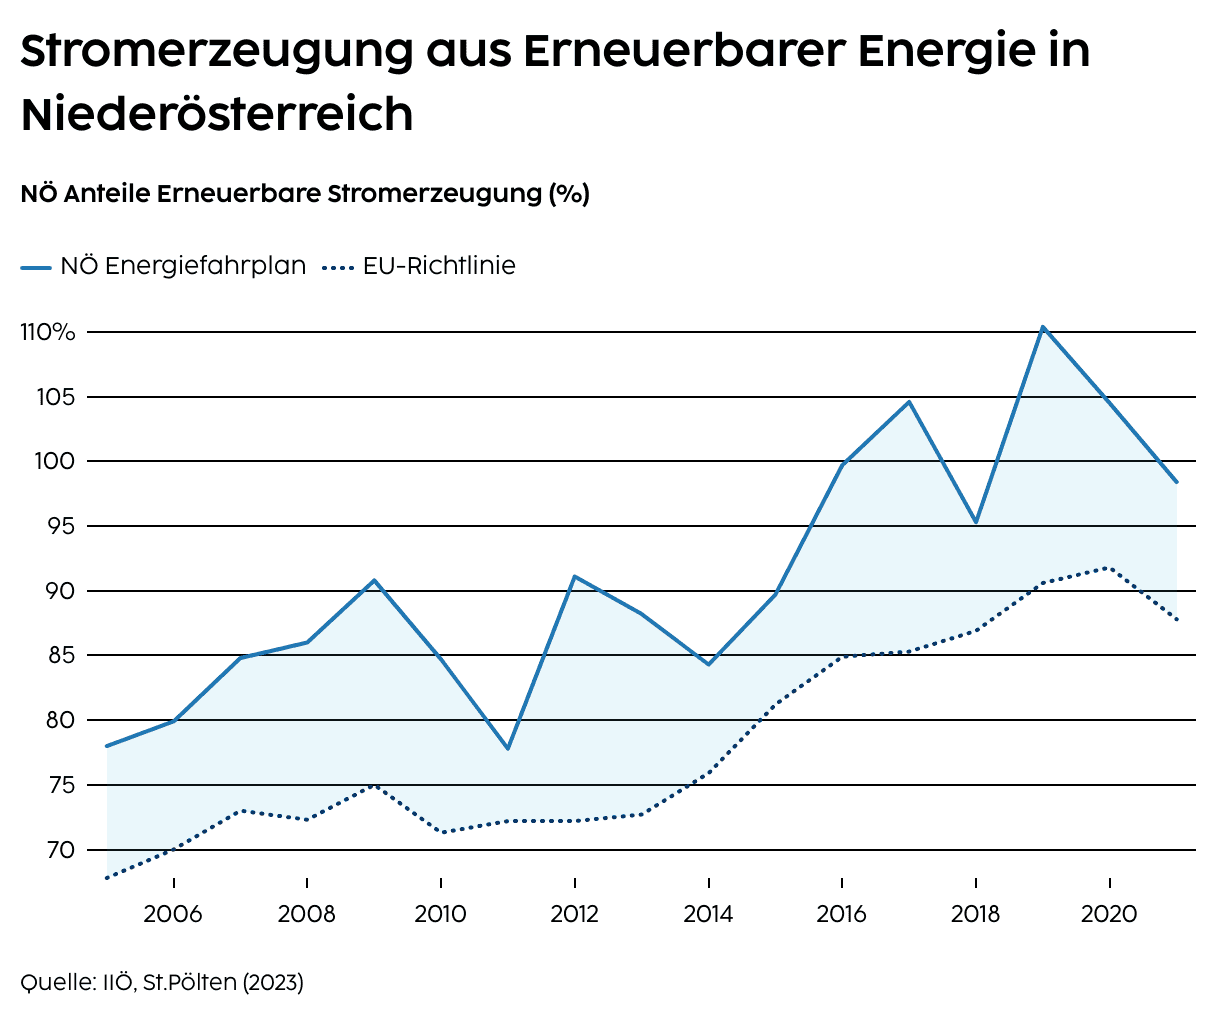 Stromerzeugung aus Erneuerbarer Energie in Niederösterreich